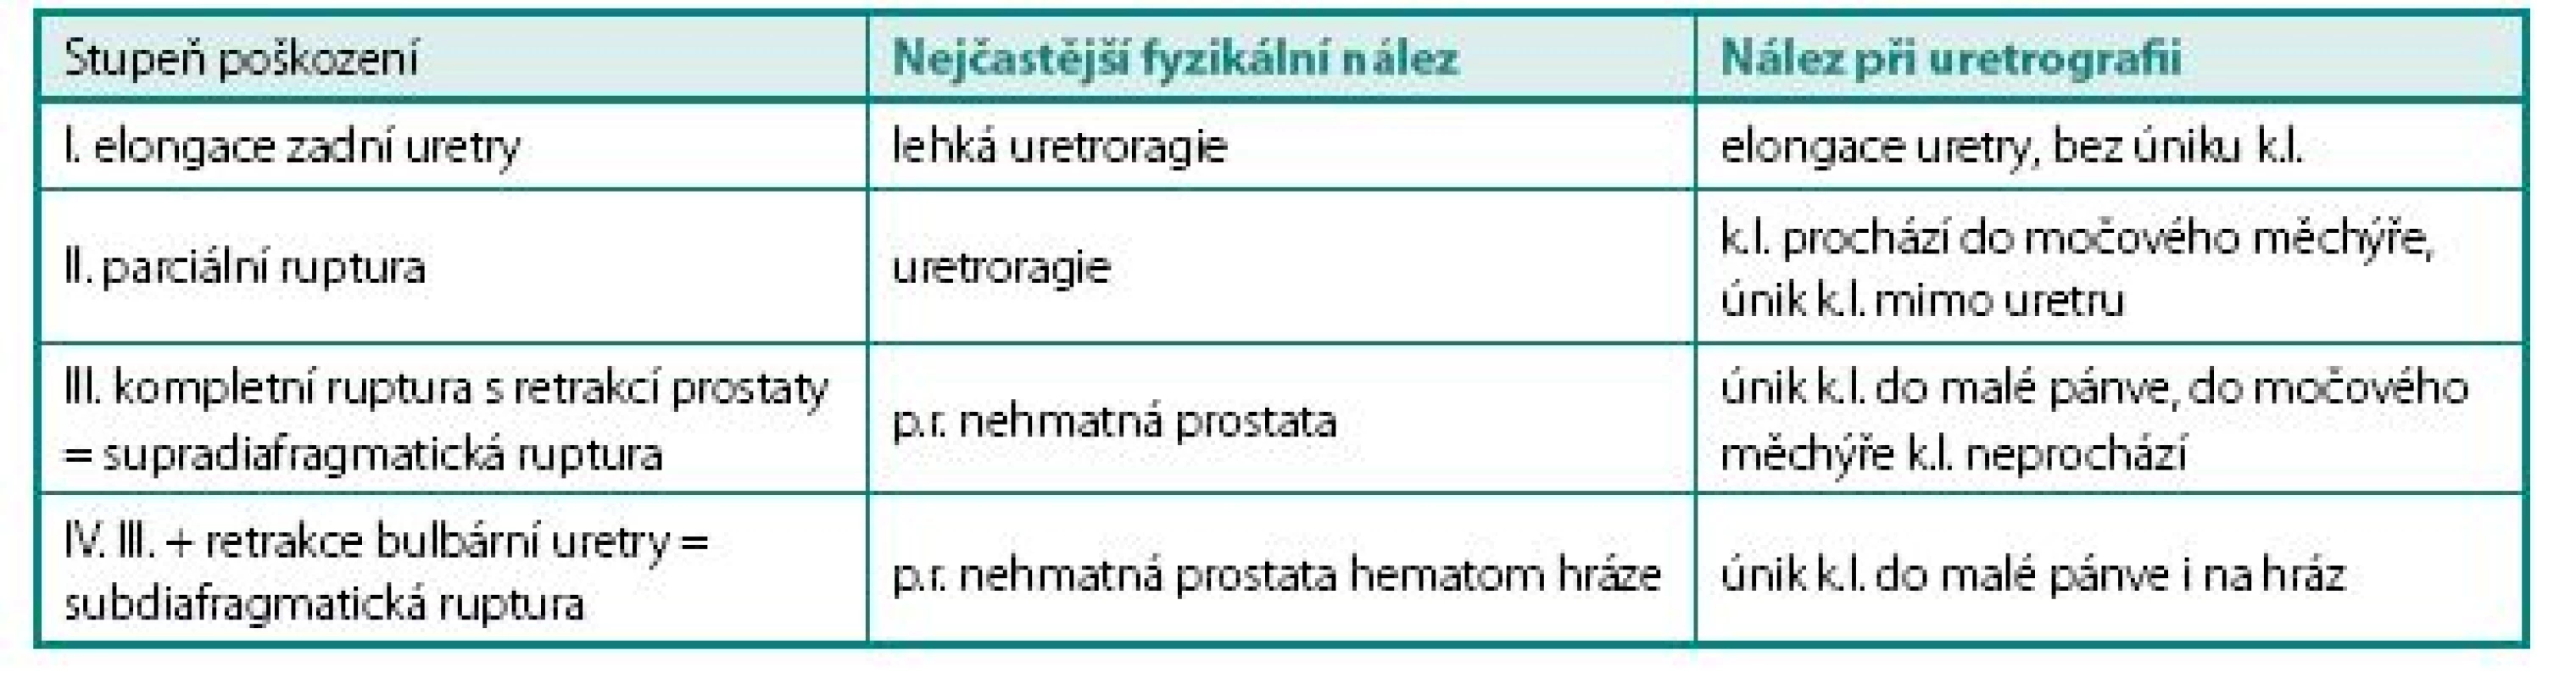 Klasifikace traumat zadní uretry podle stupně poškození
Table 4. Classification of posterior urethral injuries according to the degree of damage